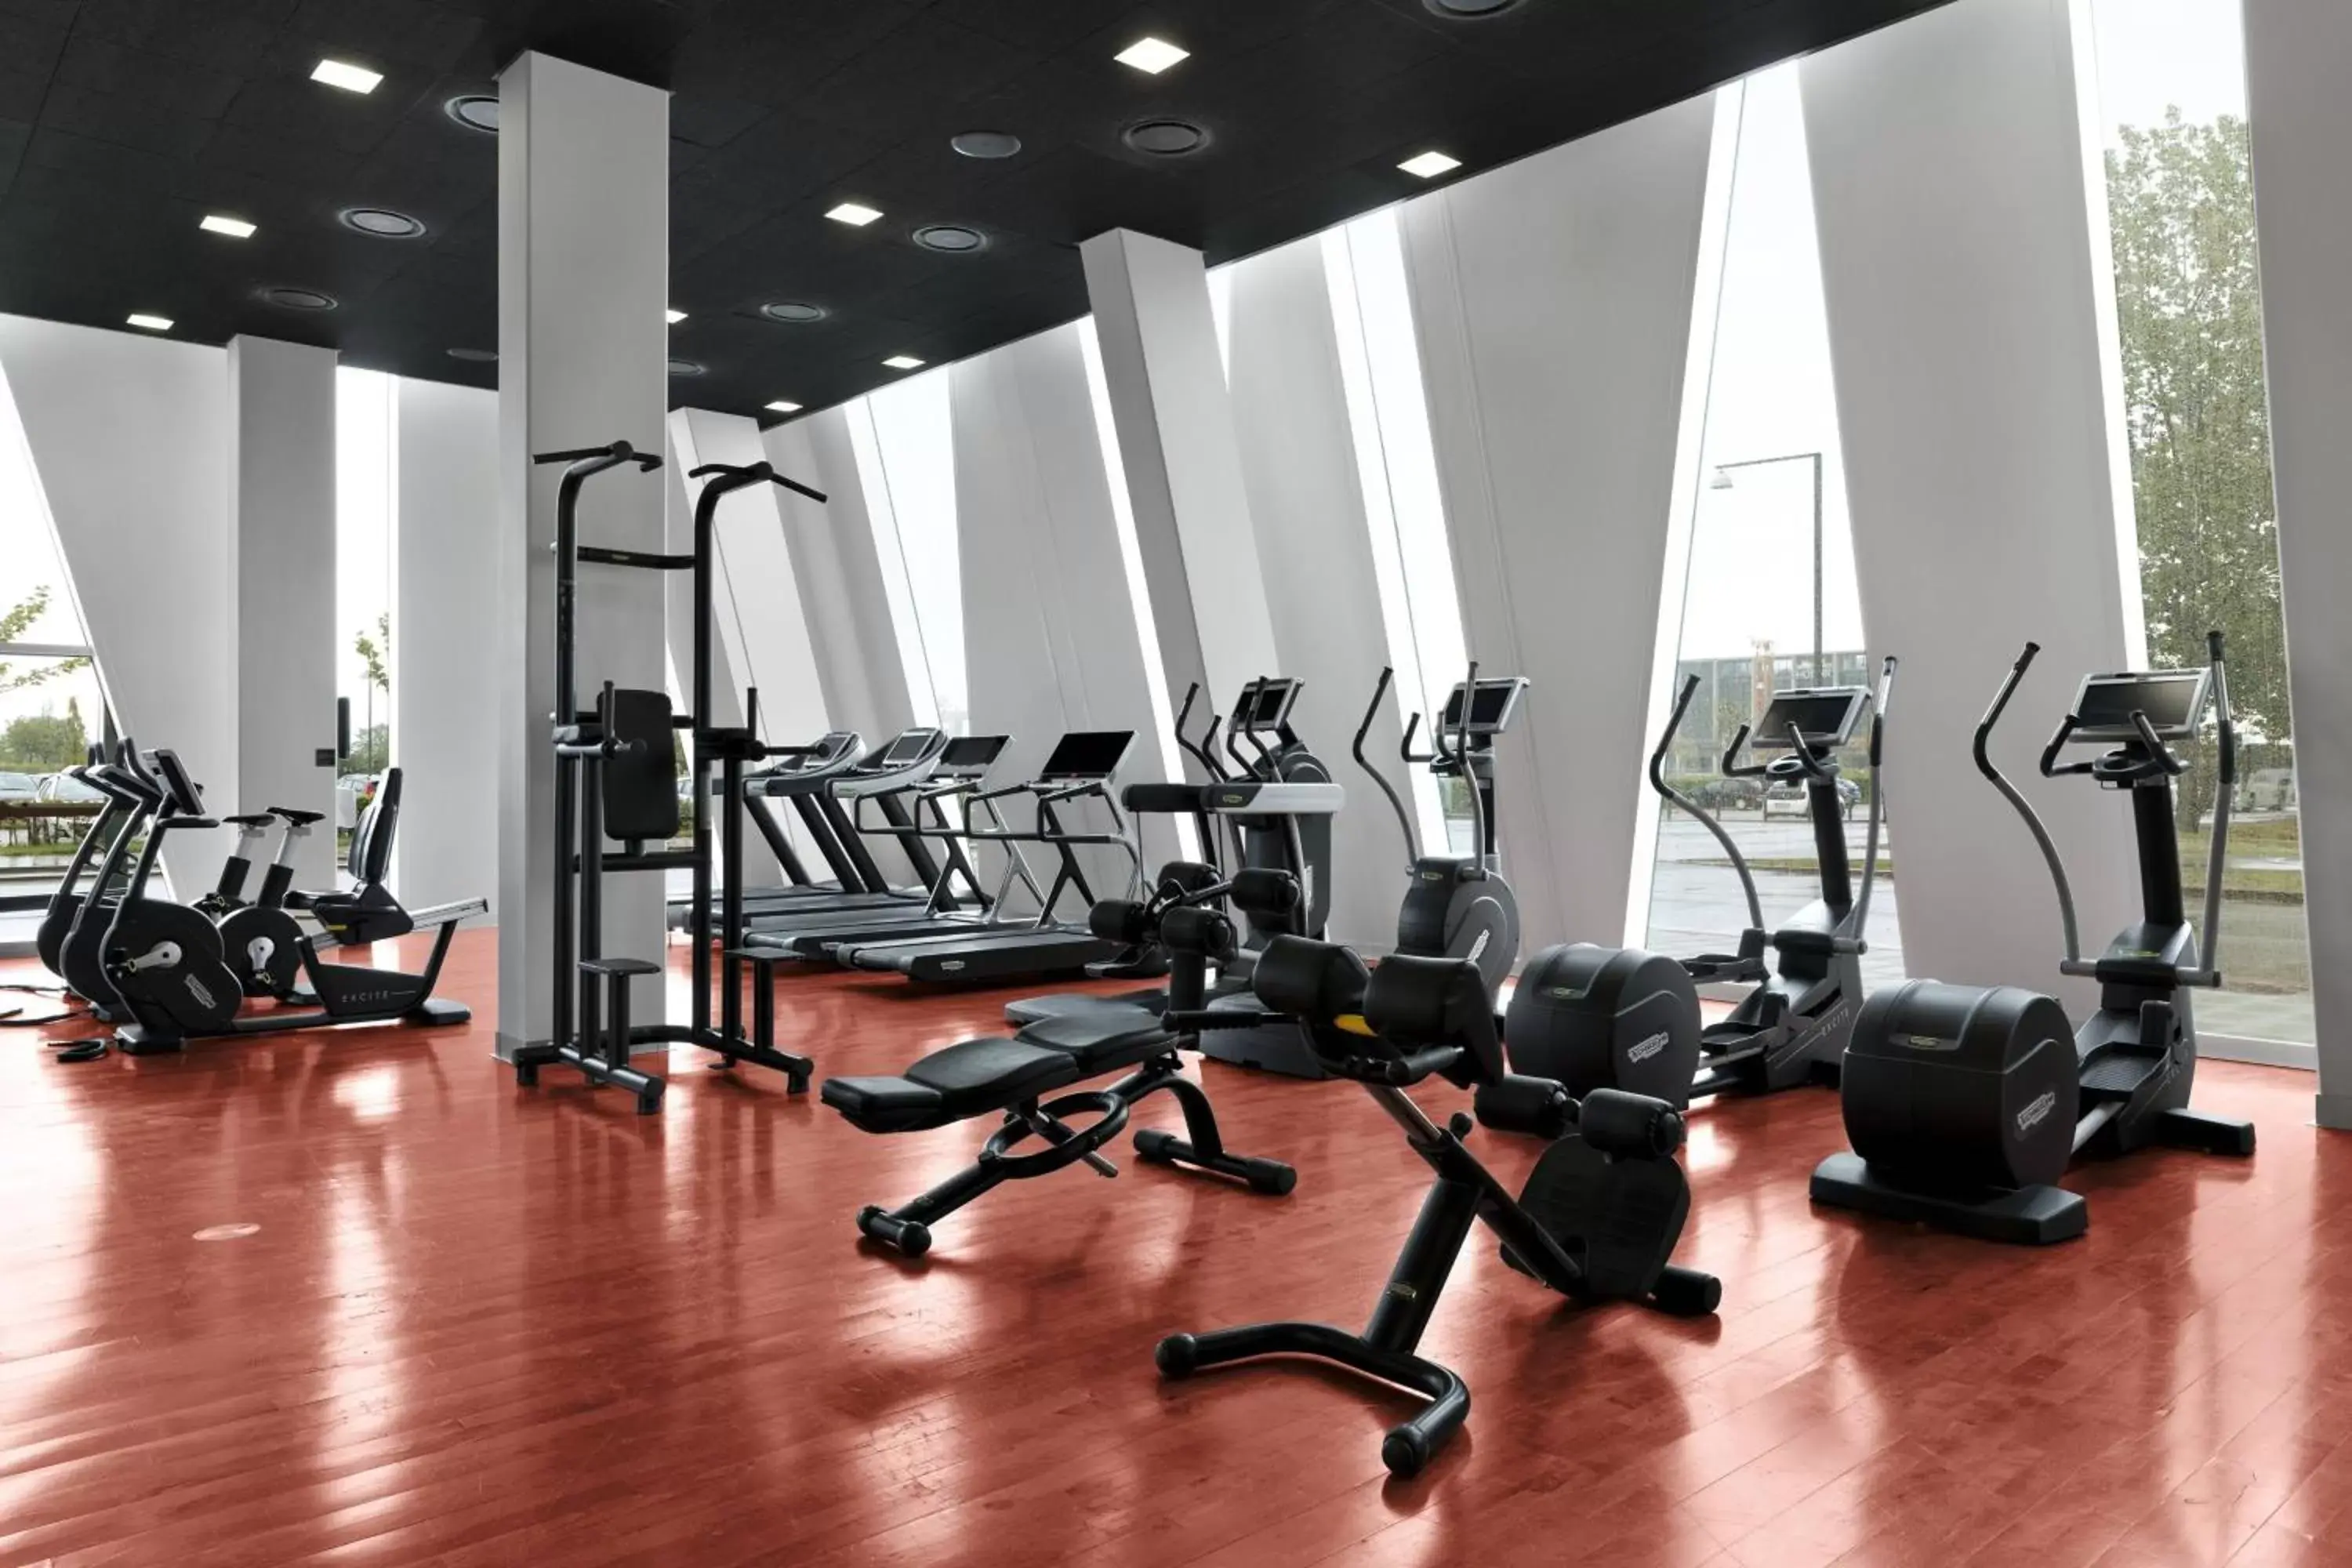 Fitness centre/facilities, Fitness Center/Facilities in AC Hotel by Marriott Bella Sky Copenhagen